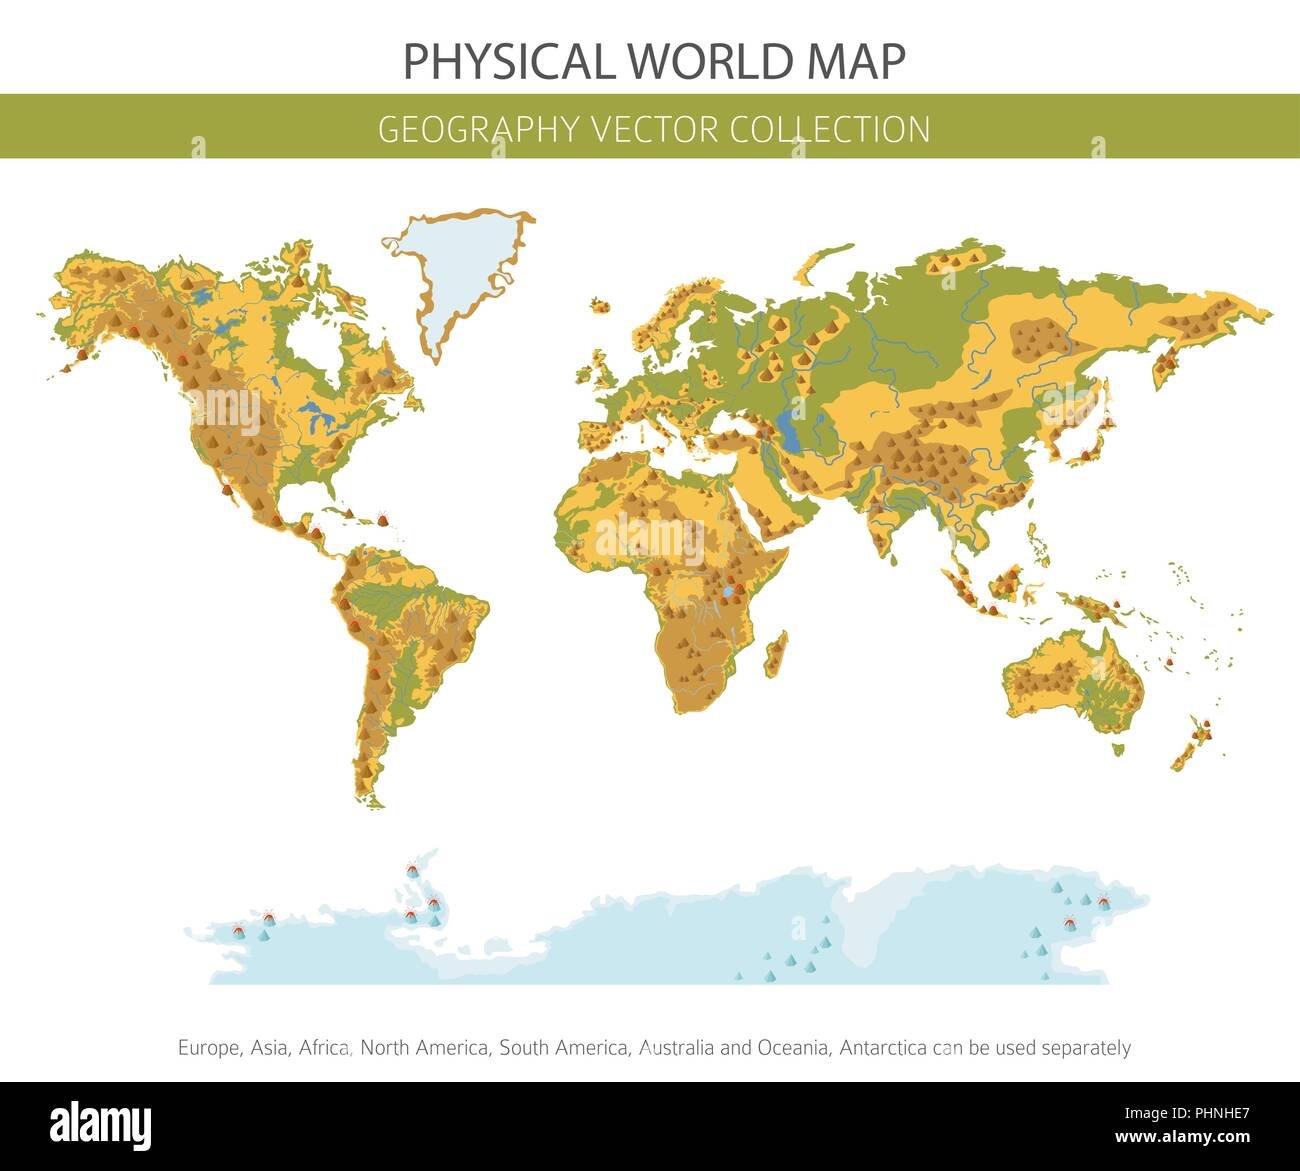 Physikalische Weltkarte Elemente. Ihre eigene Geographie info Graphische Sammlung aufzubauen. Vector Illustration Stock Vektor